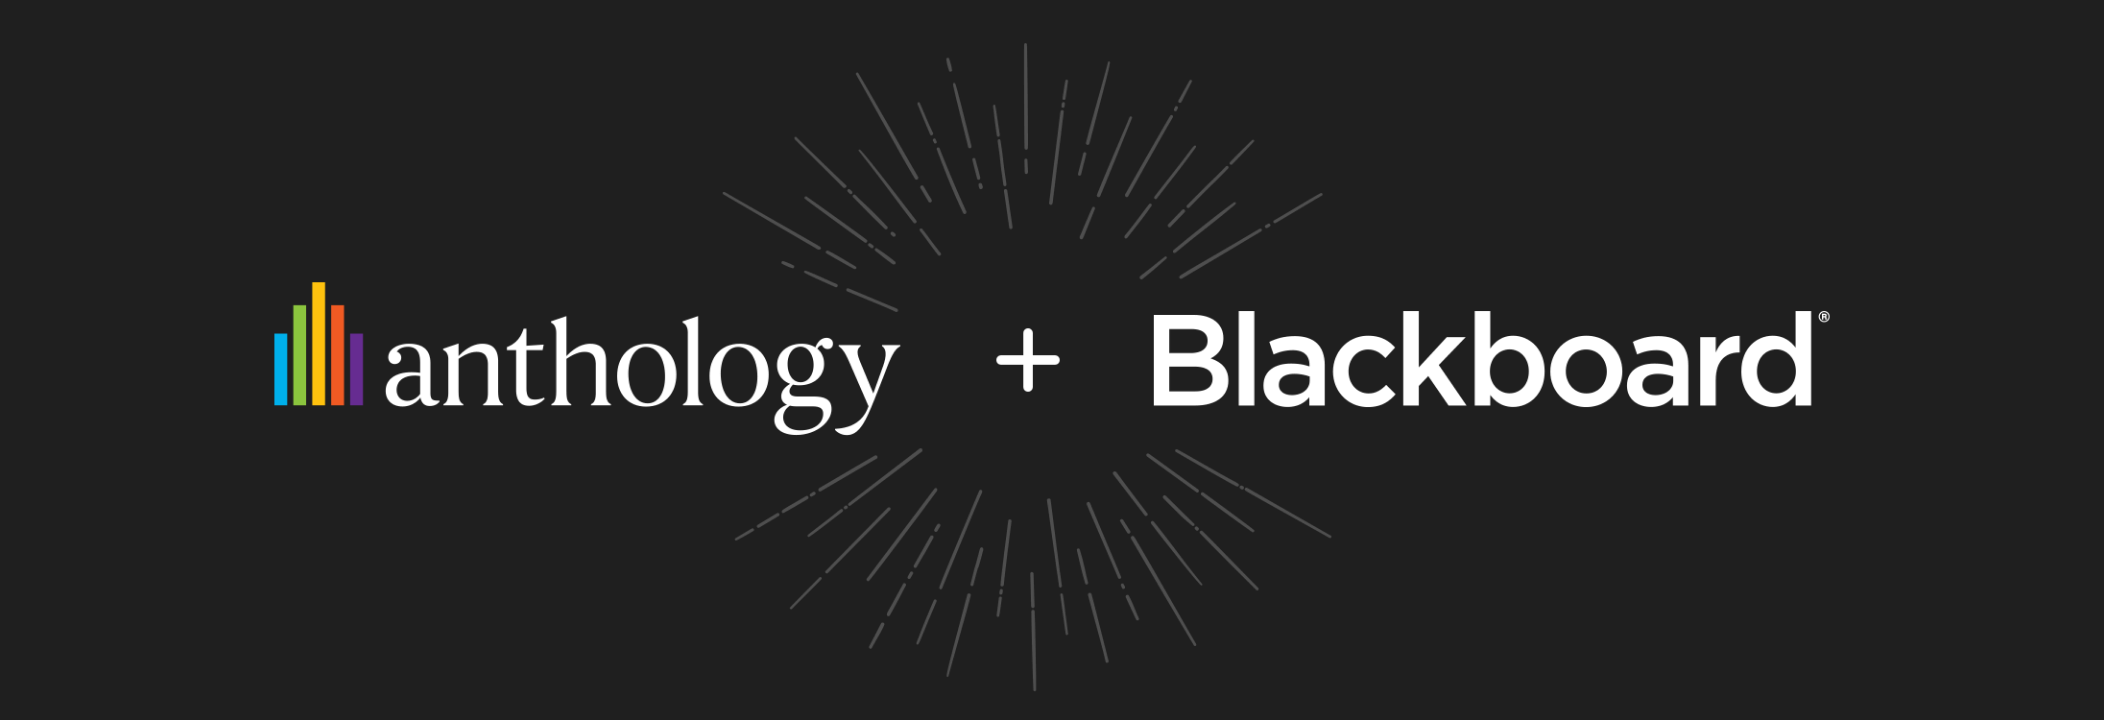 Anthology + Blackboard logo lockup